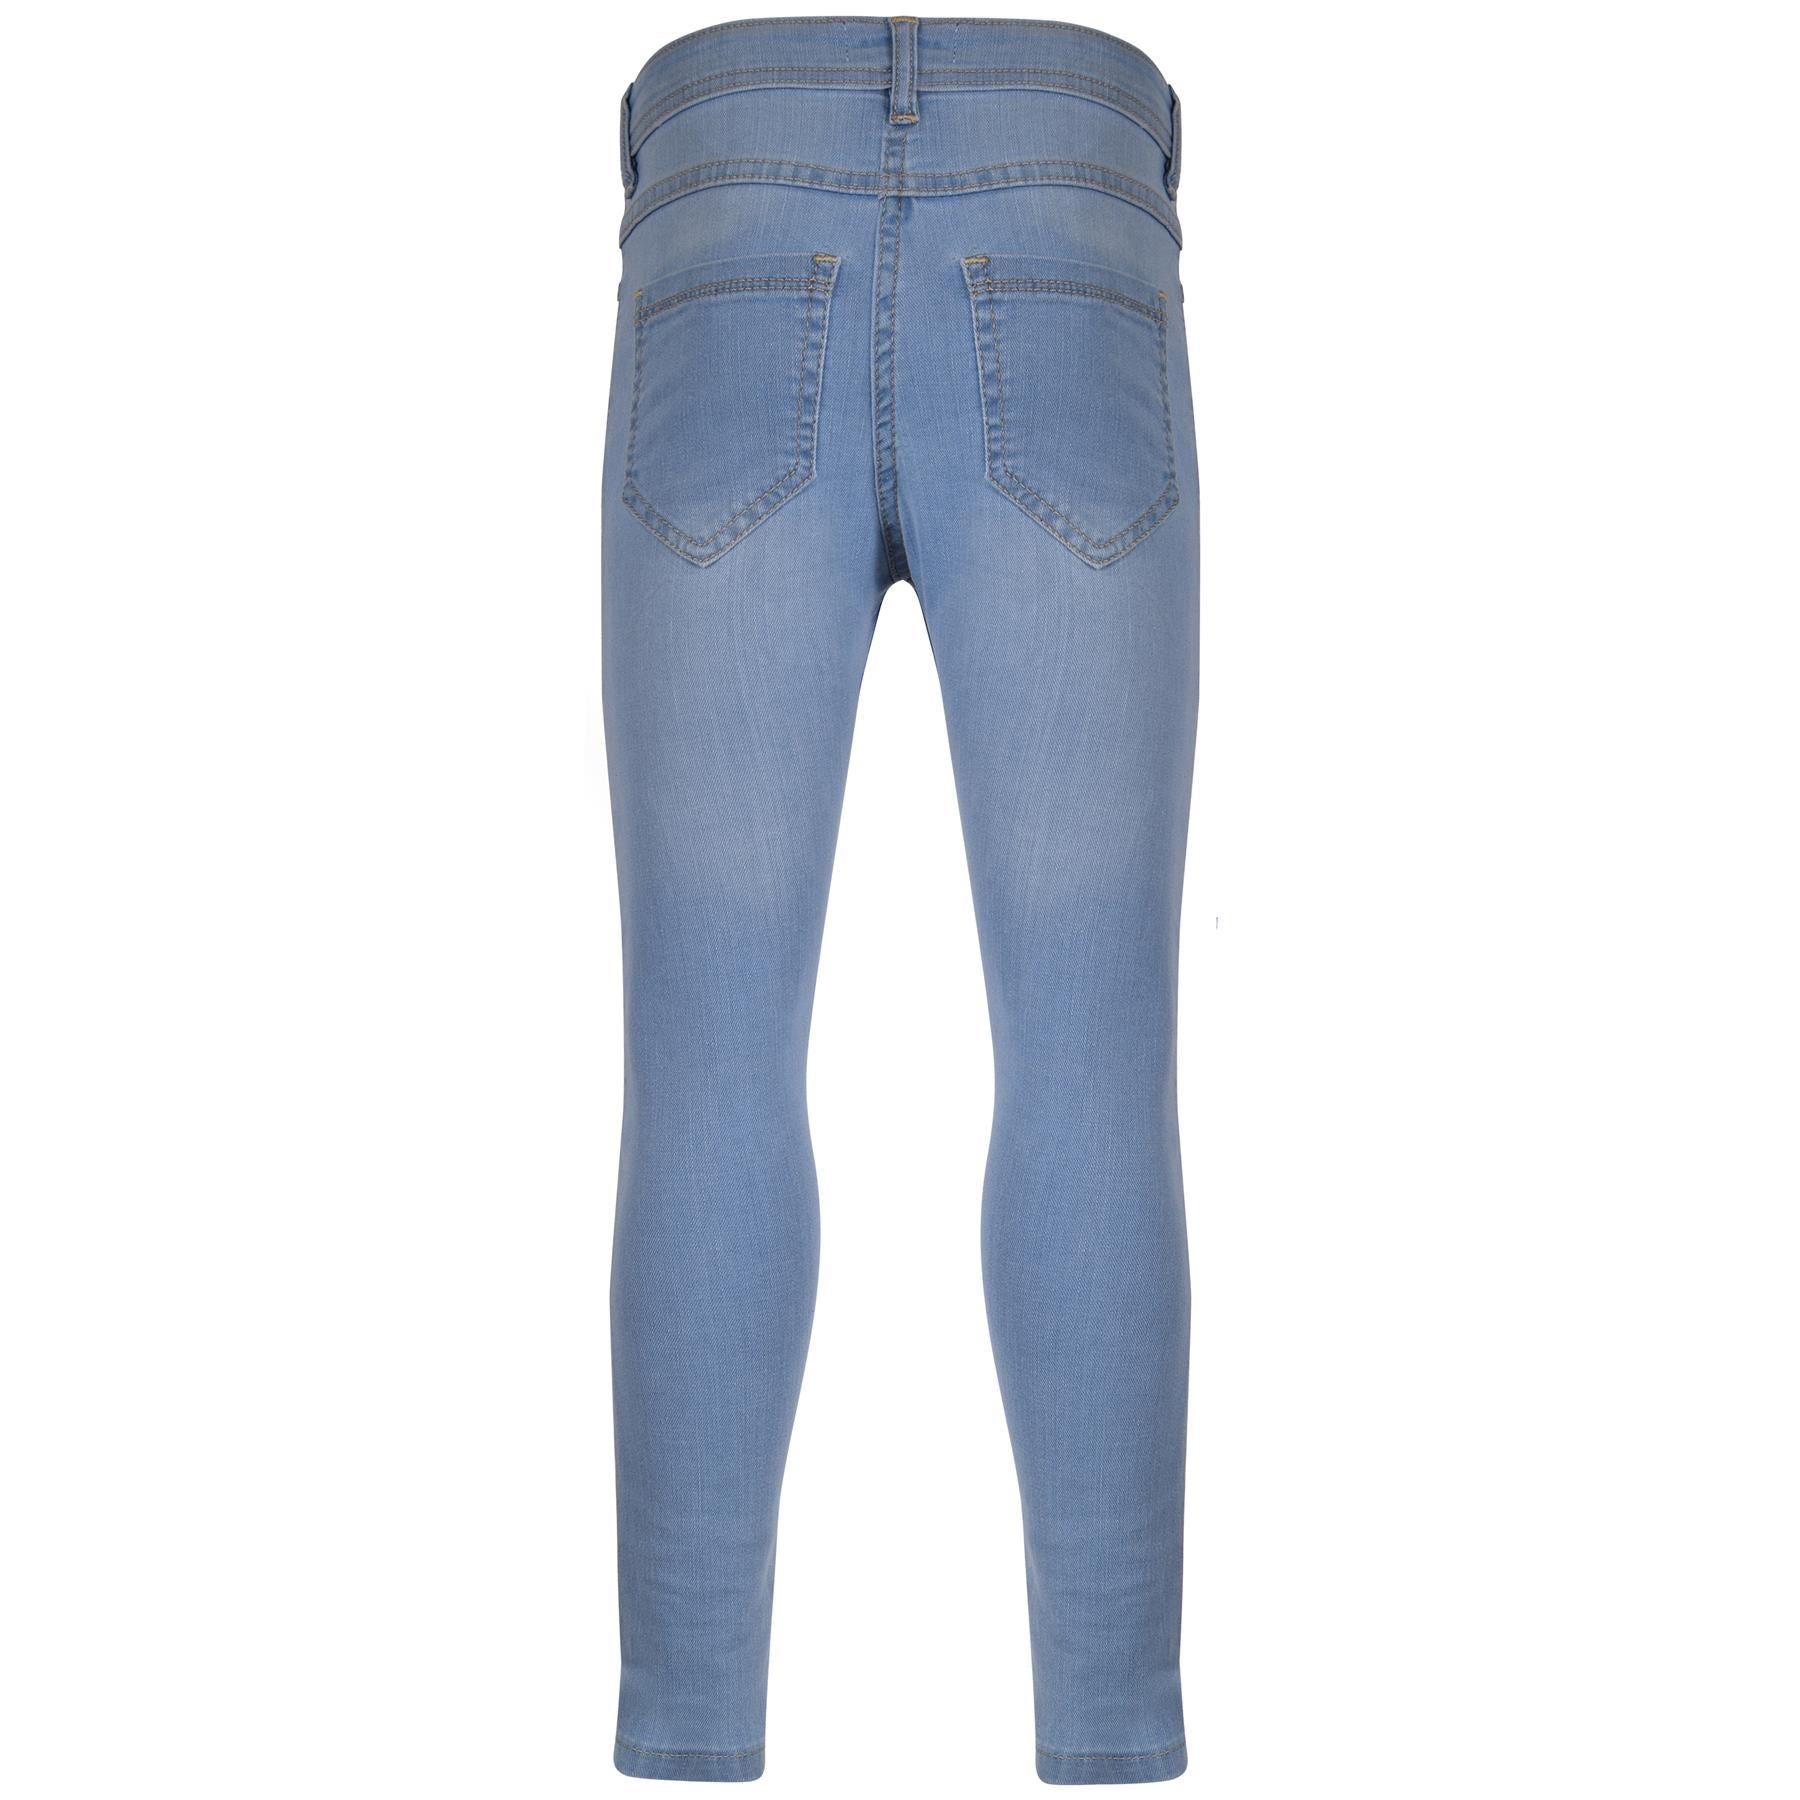 Crease Stacked Biker Denim Jeans - Indigo / 36/32 | Cool outfits for men, Biker  denim, Biker denim jeans